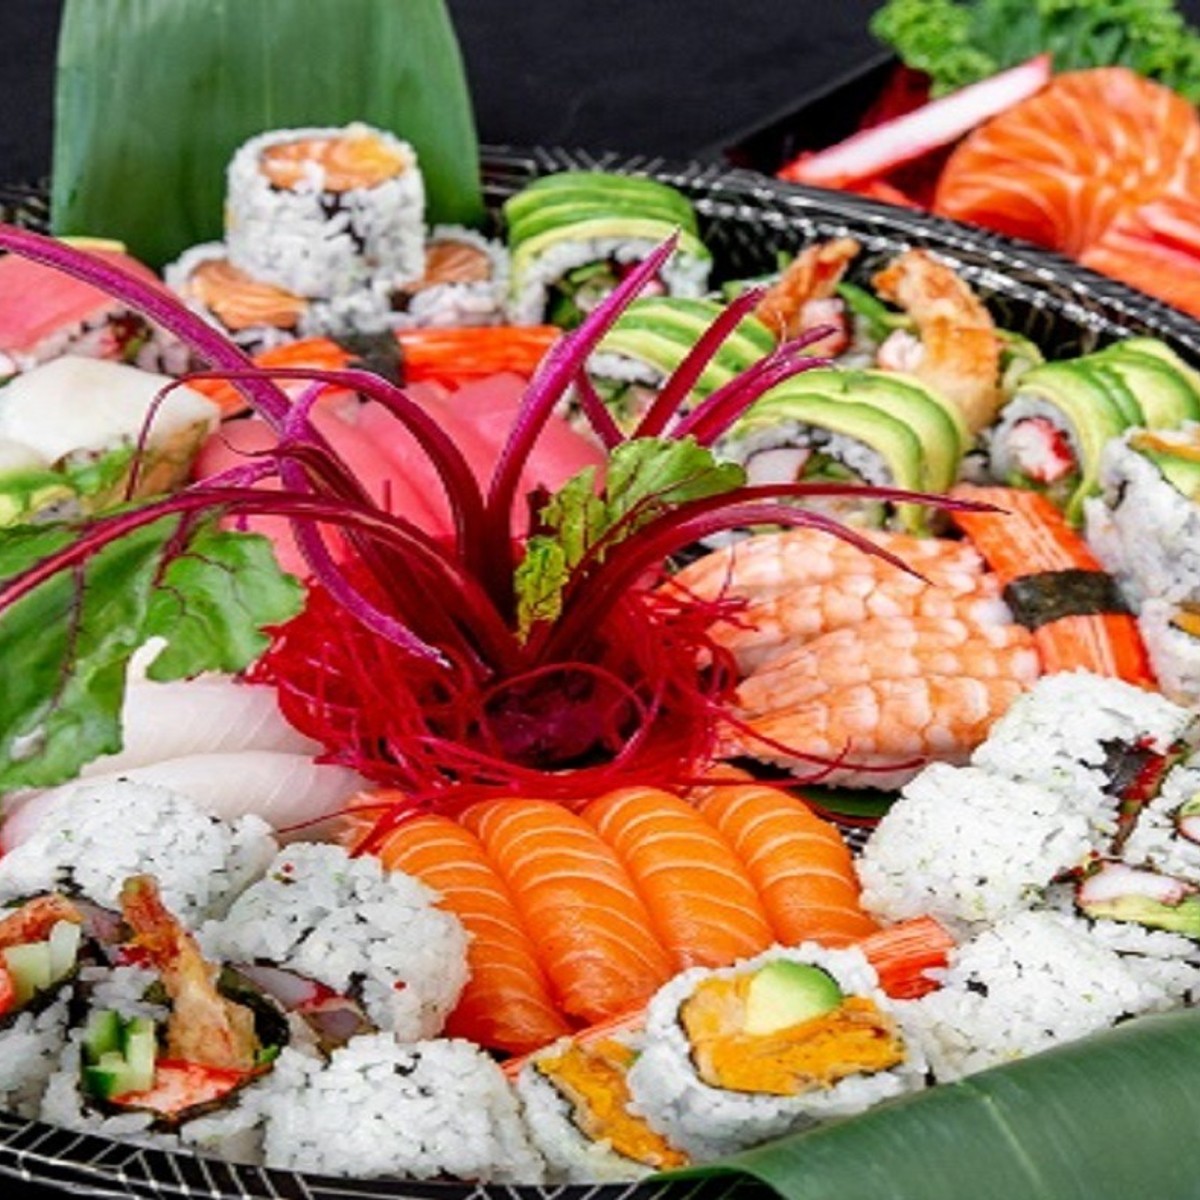 Salmon Sashimi & Sushi Party Set